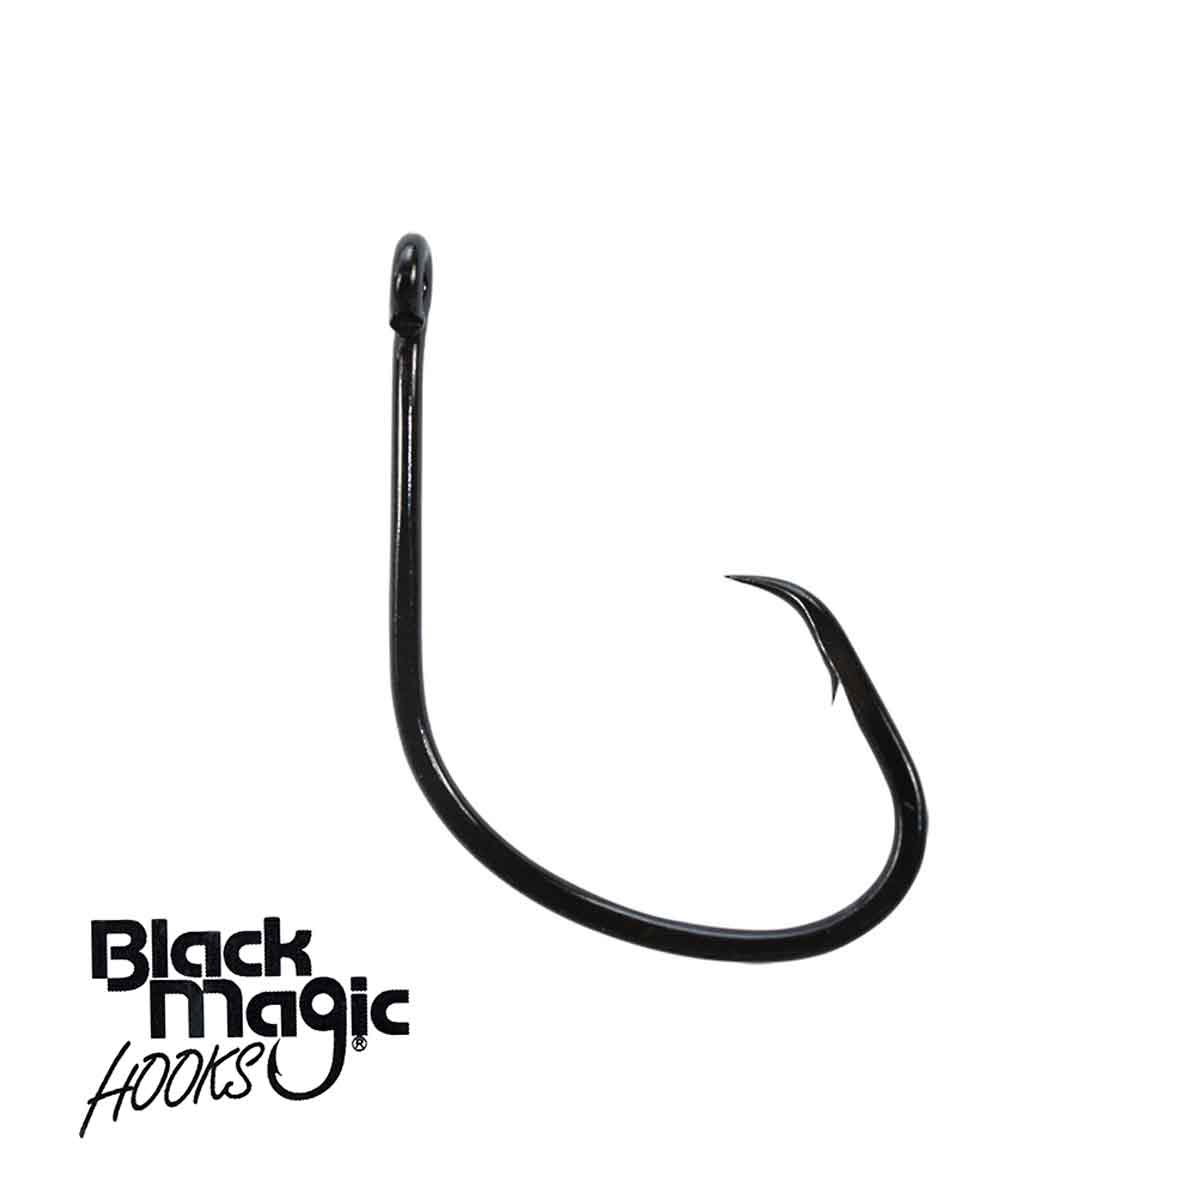 Black Magic KL Hooks – Fishing Online Australia